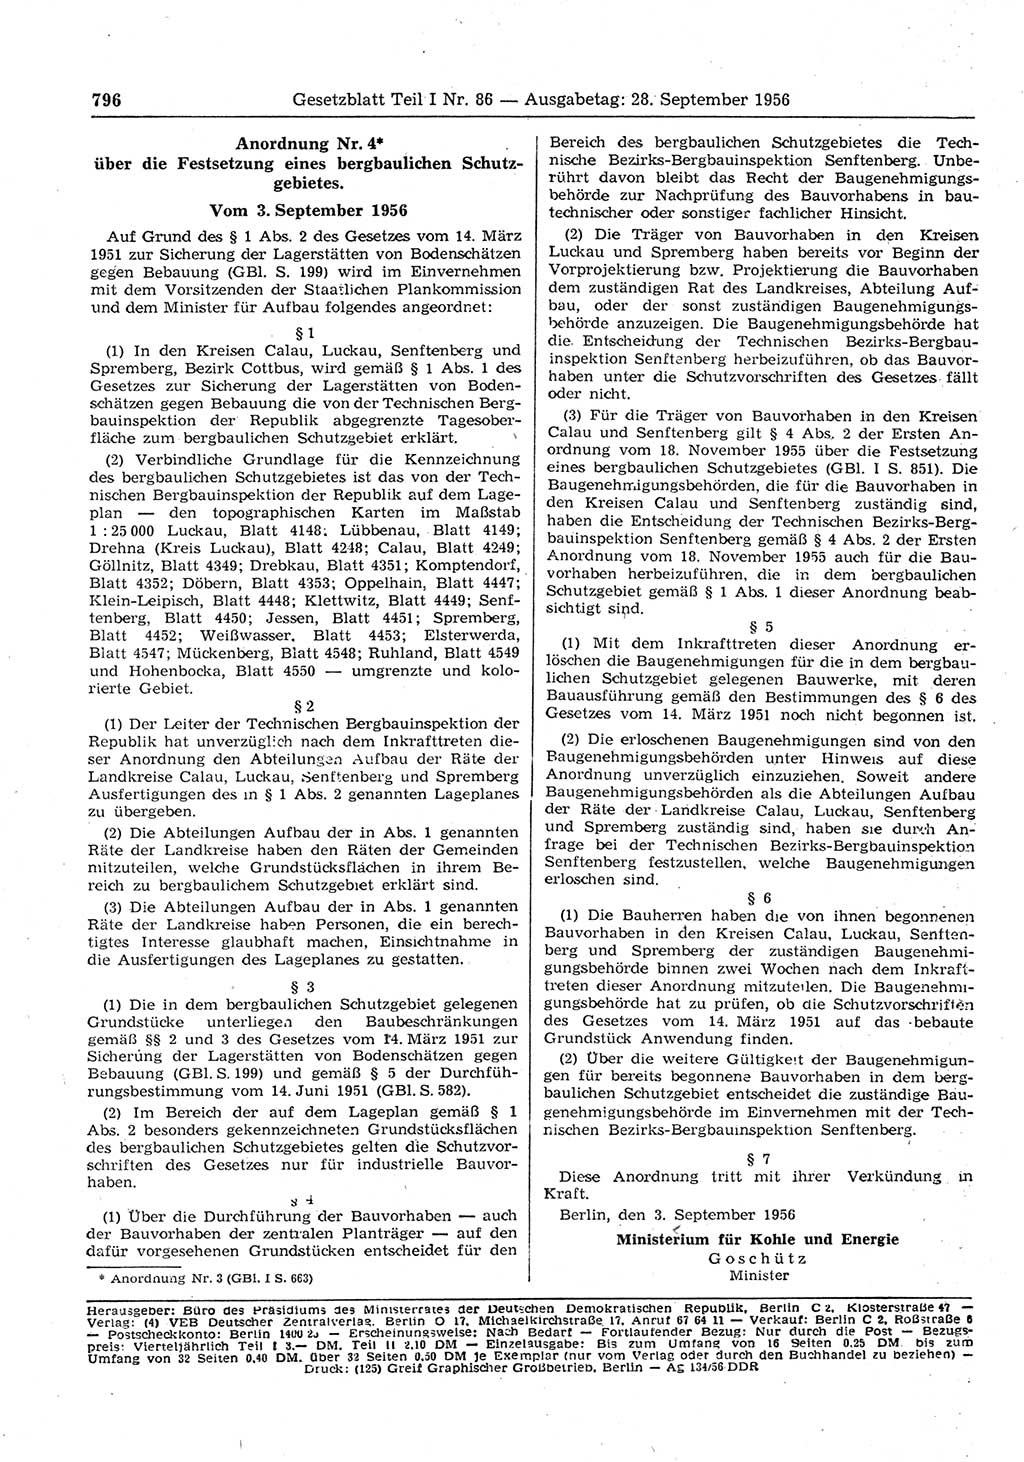 Gesetzblatt (GBl.) der Deutschen Demokratischen Republik (DDR) Teil Ⅰ 1956, Seite 796 (GBl. DDR Ⅰ 1956, S. 796)